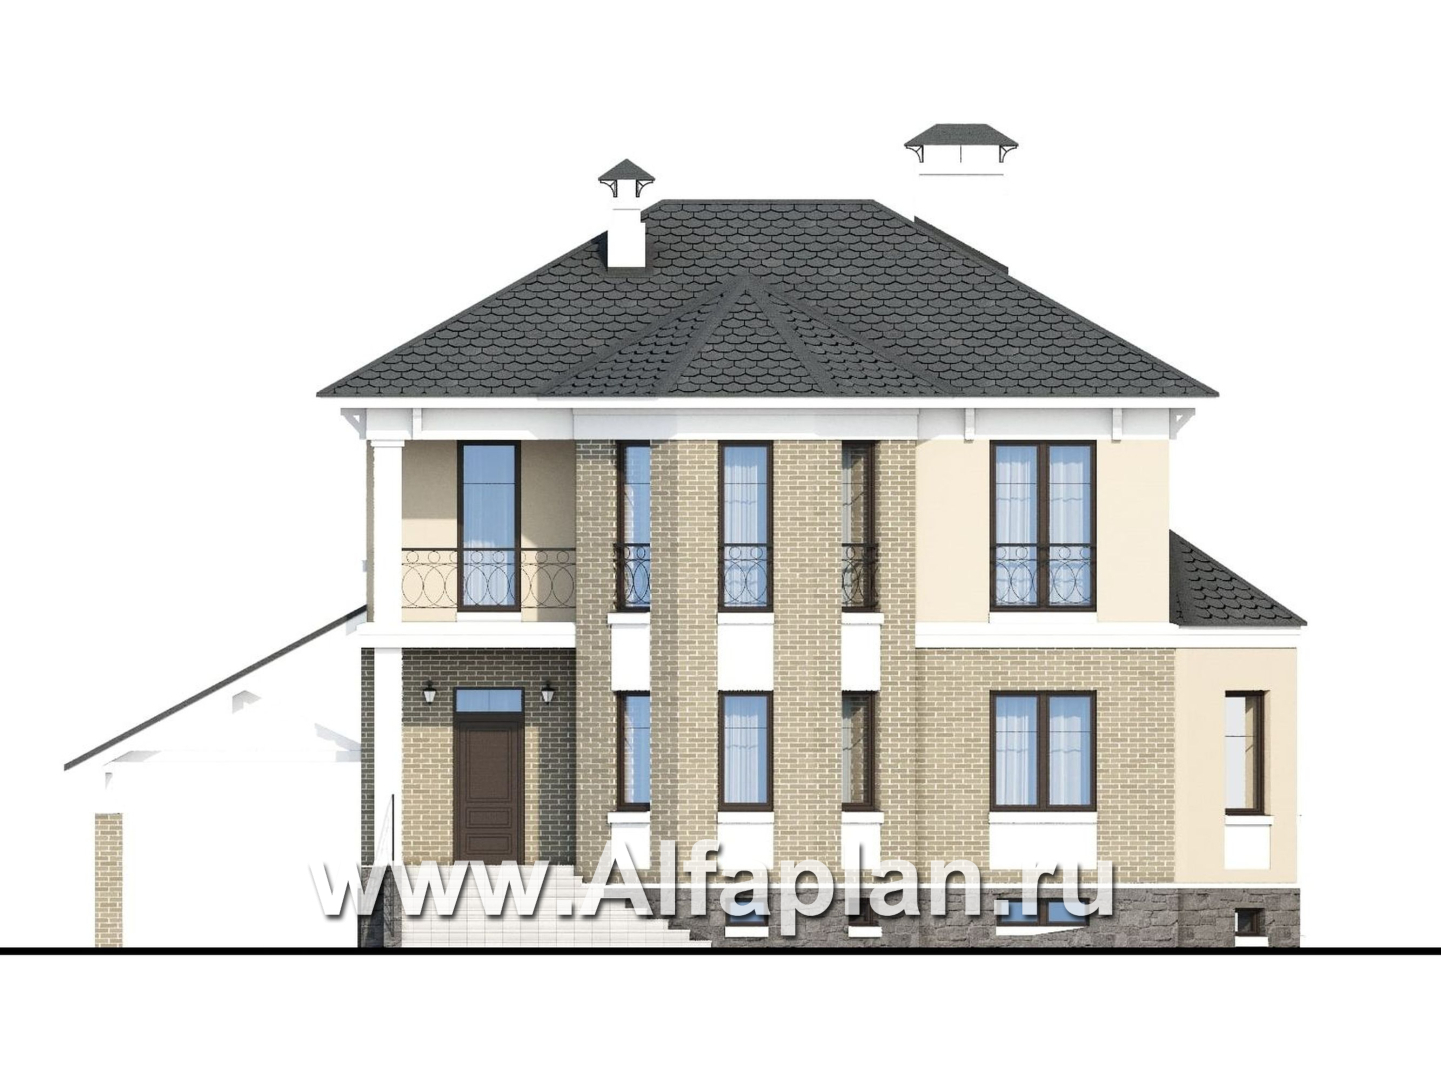 «Классика» - проект двухэтажного дома с эркером, планировка с кабинетом на 1 эт и с террасой, с цокольным этажом - фасад дома